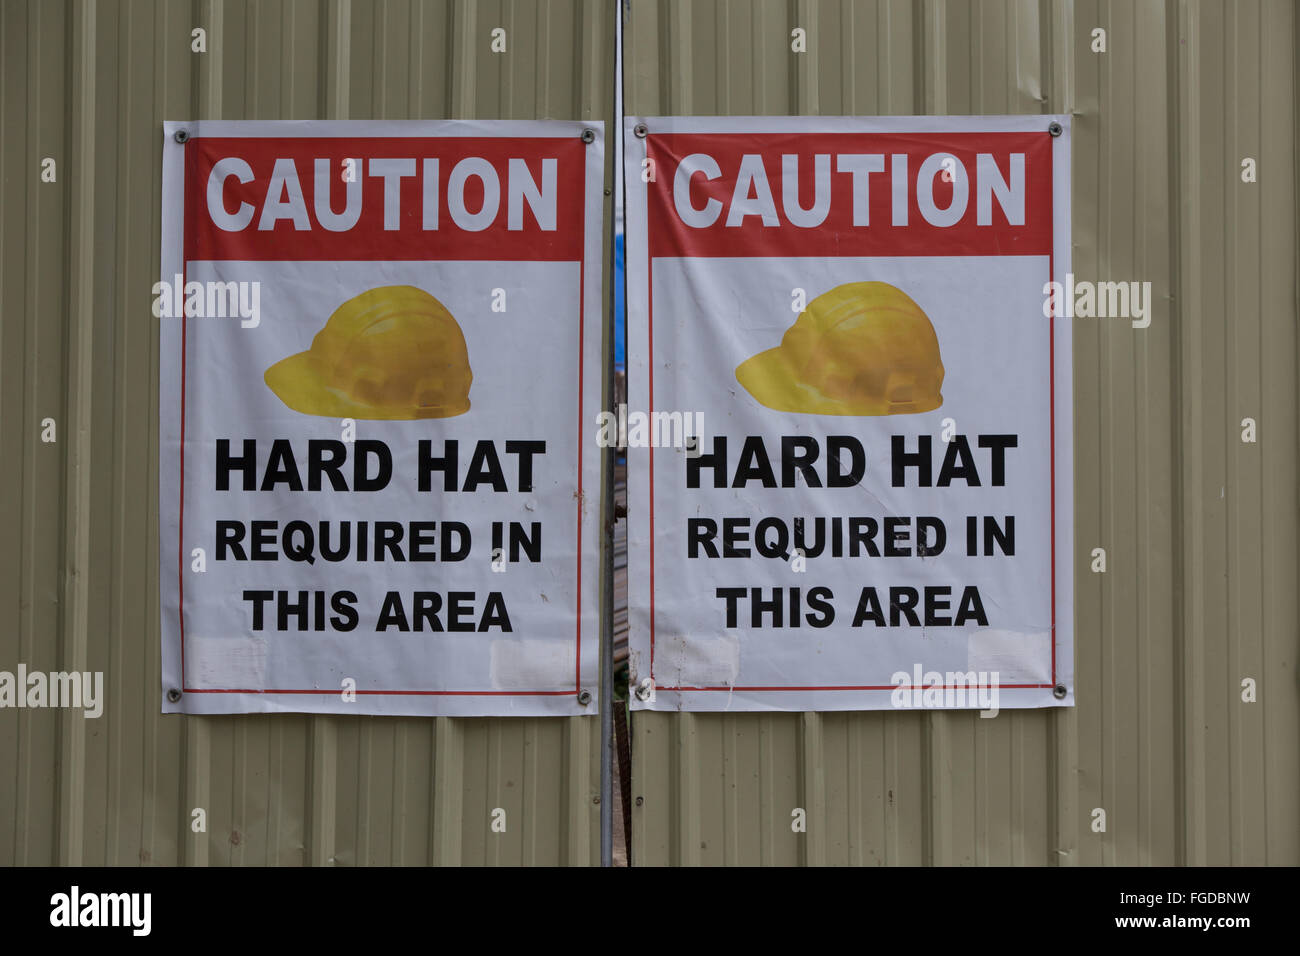 Santé & Sécurité signalisation autour de chantiers dans la ville de Cebu, Philippines Banque D'Images